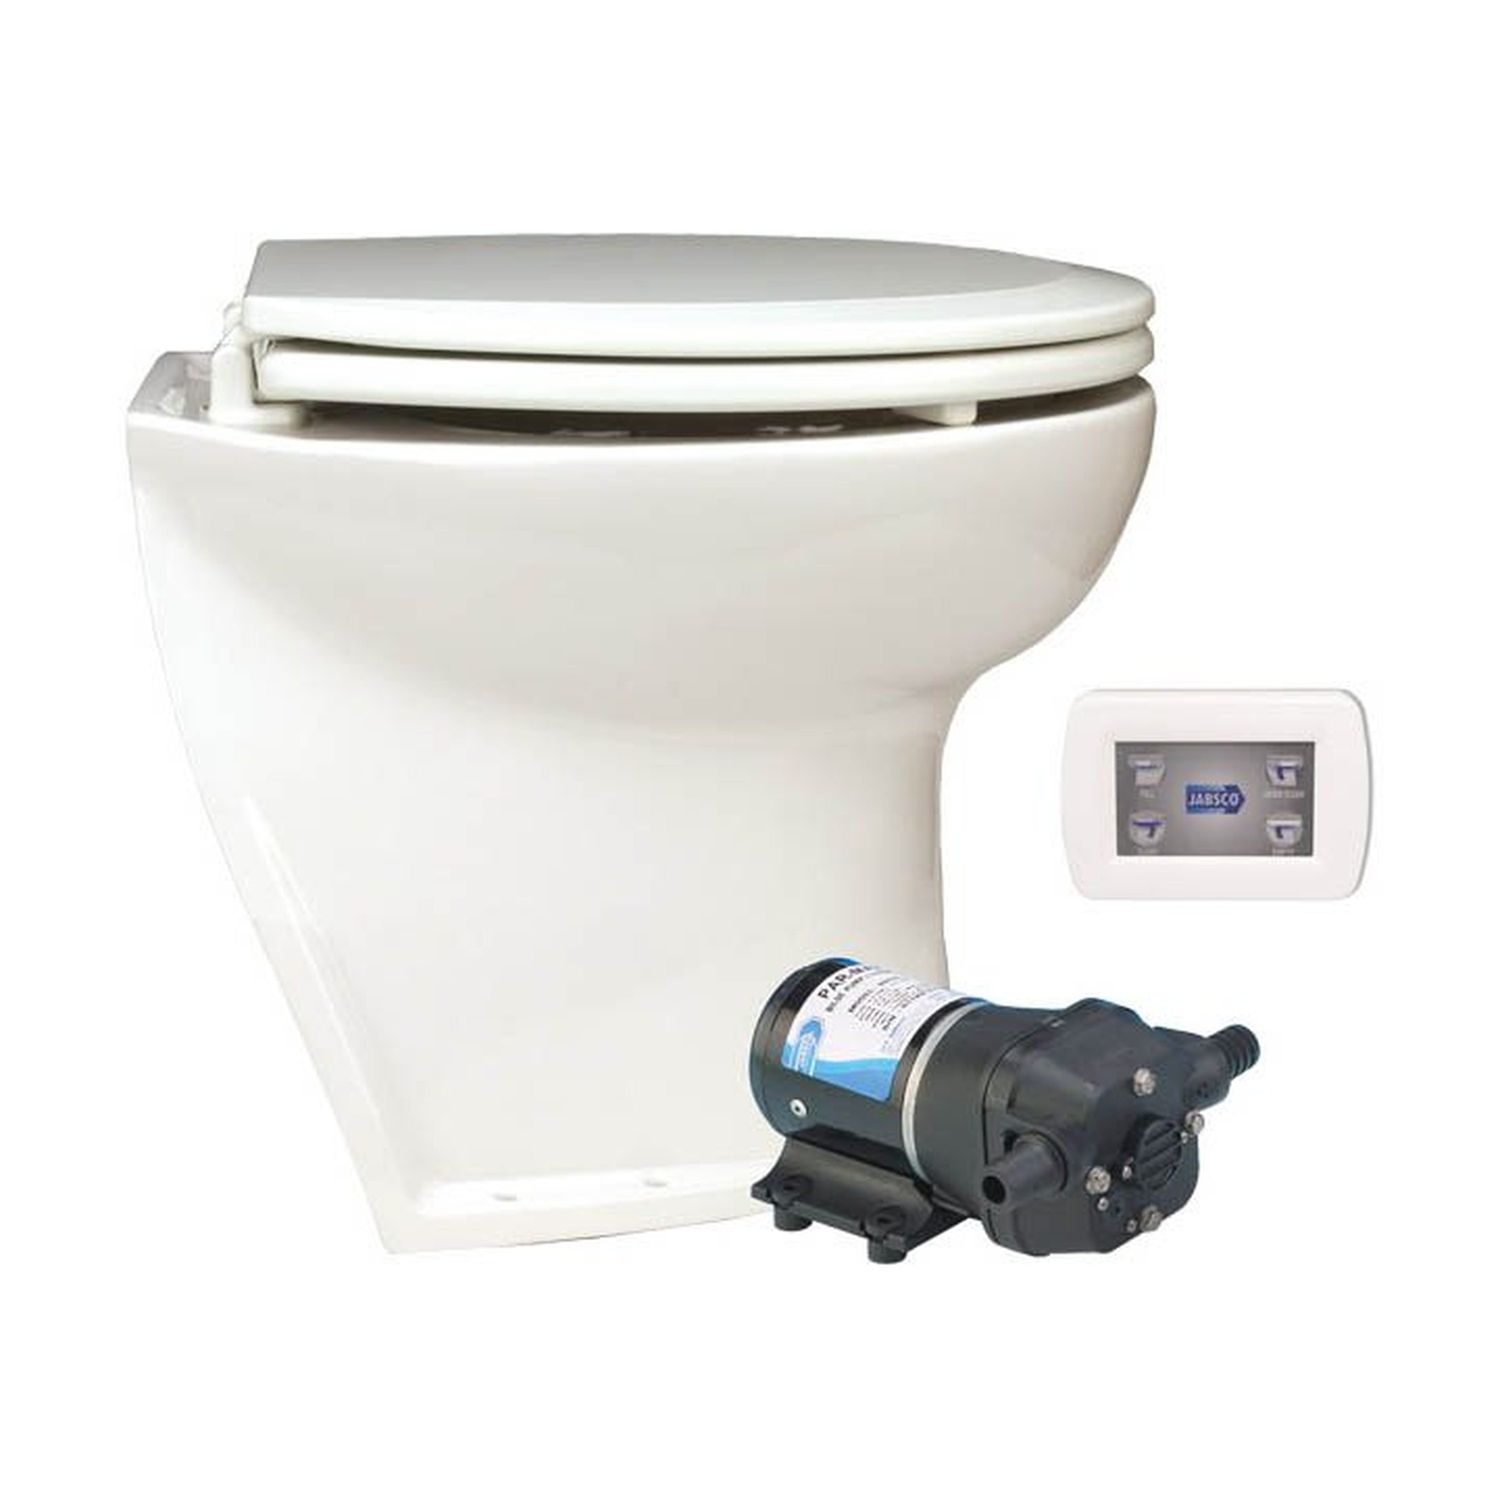 Jabsco El-toalett Deluxe Flush 14'', Vinklad, Solenoid 12v